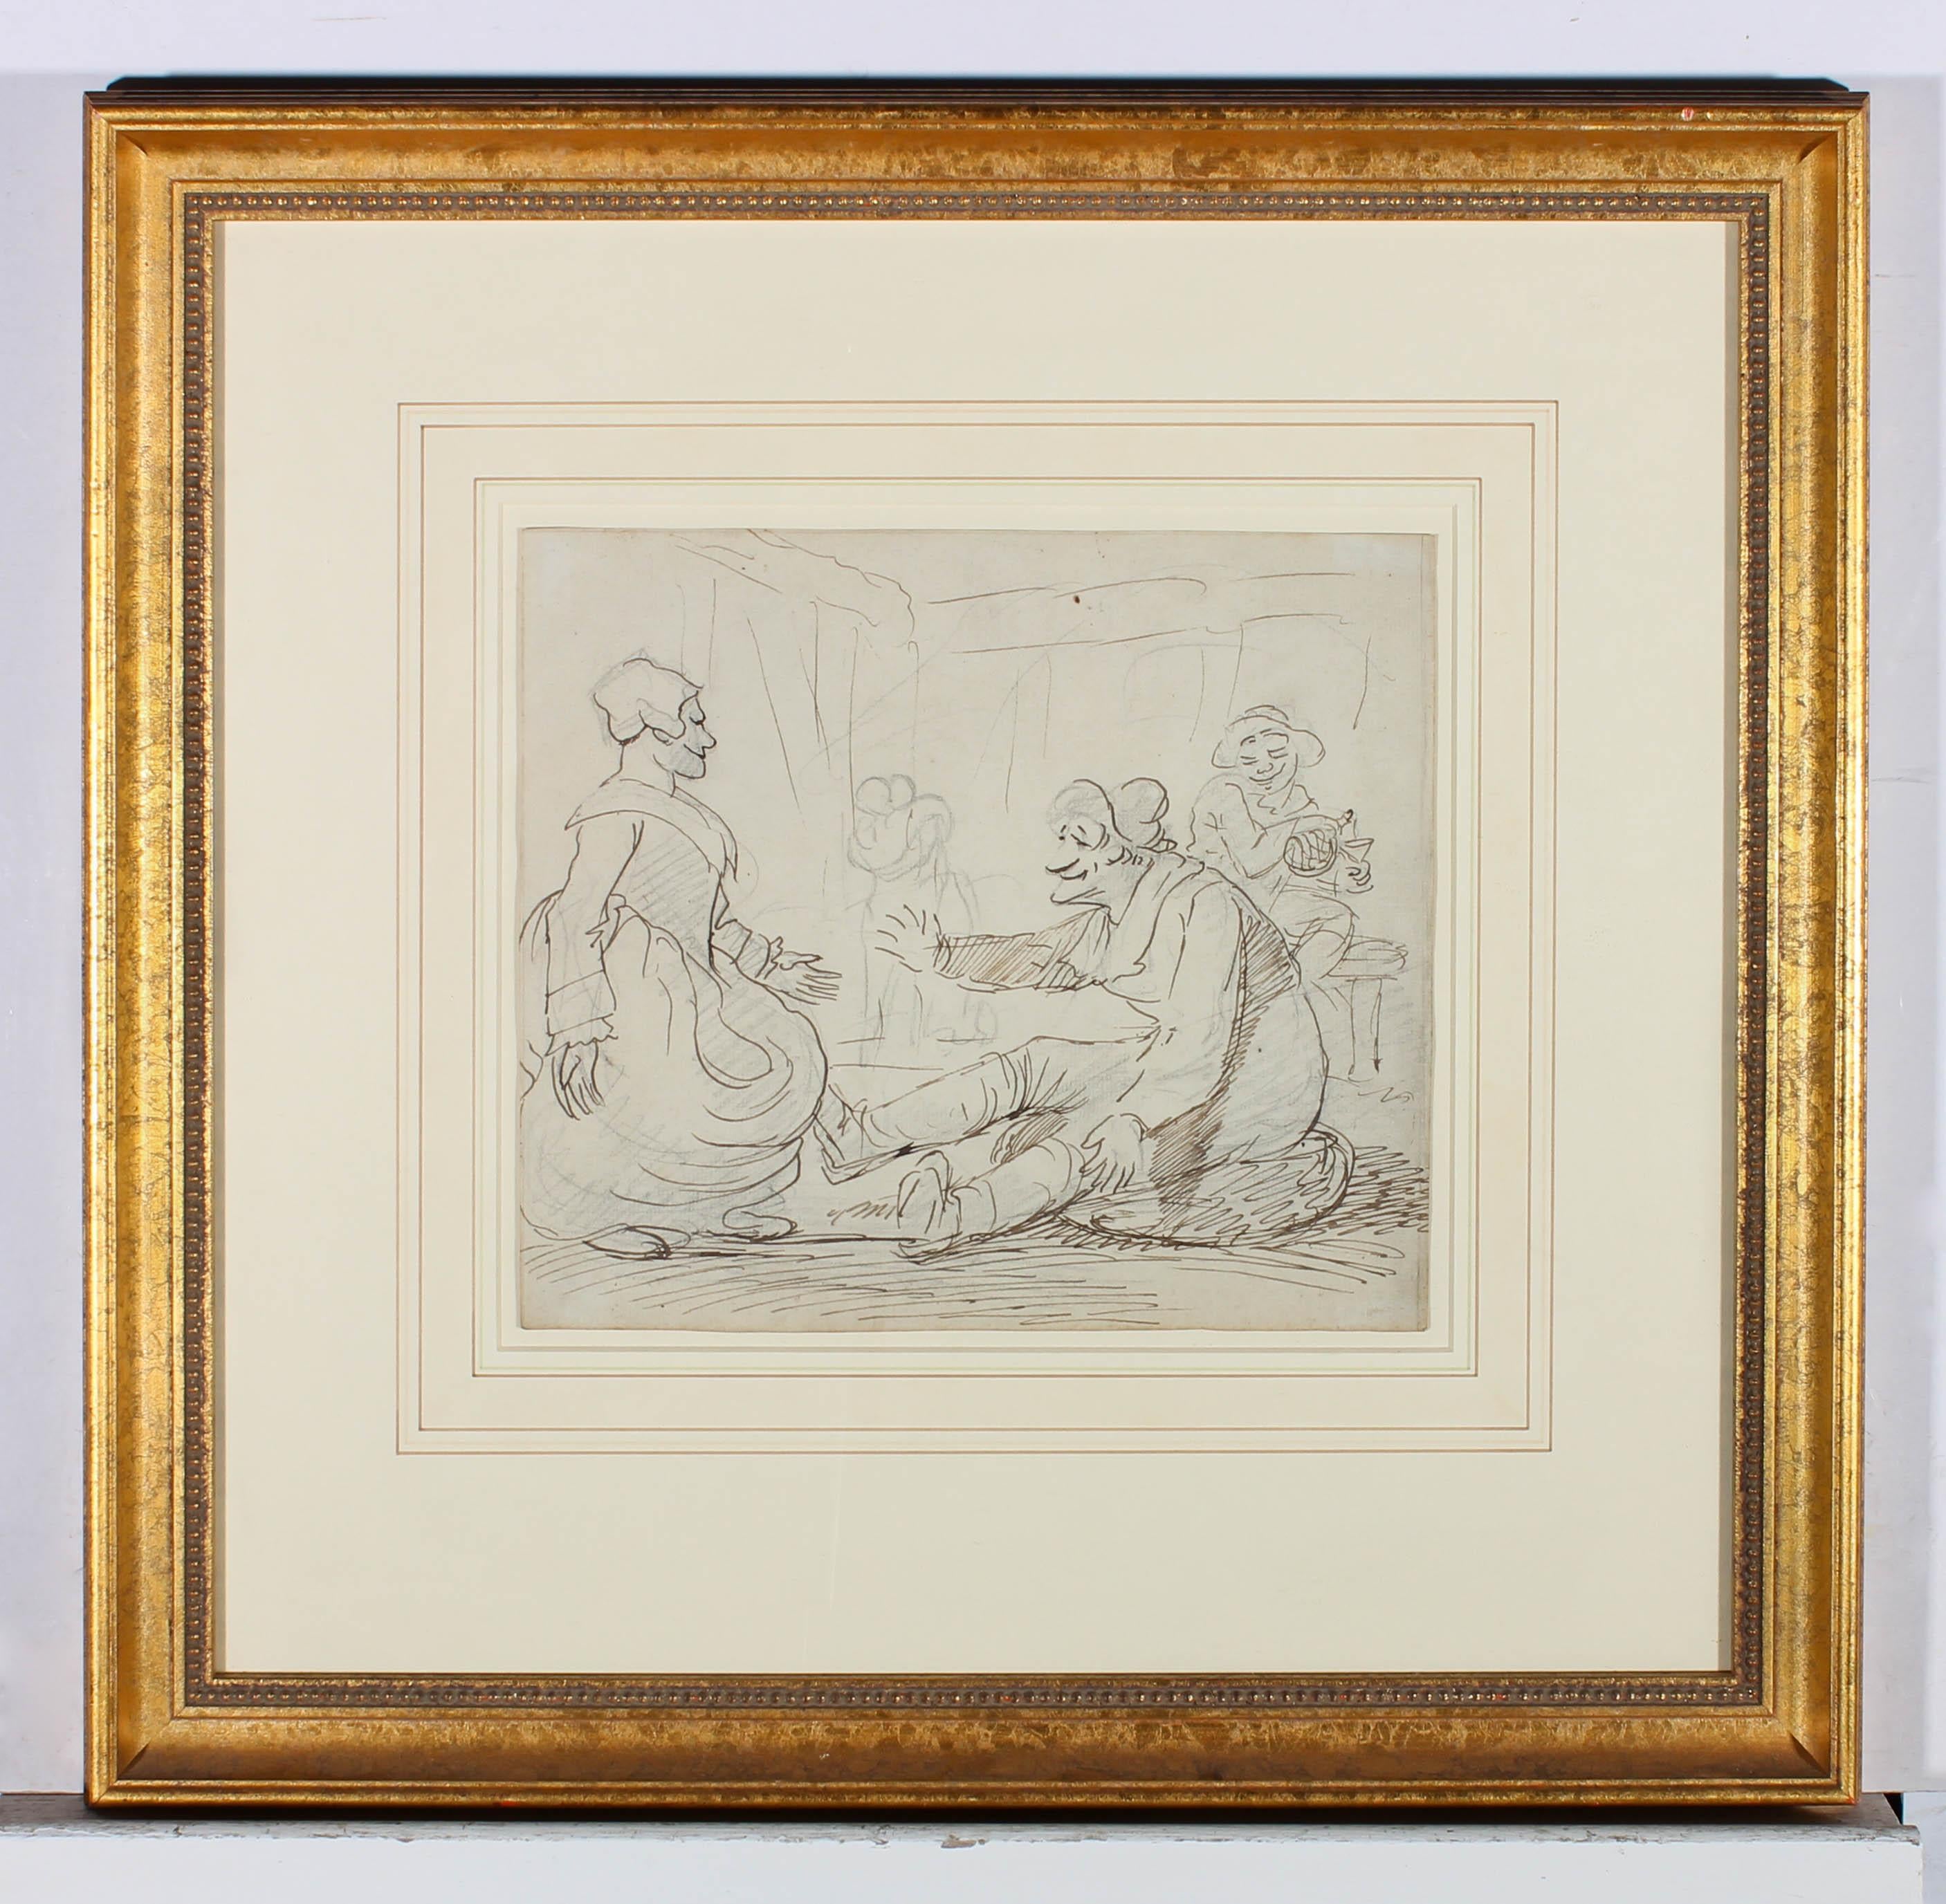 Eine witzige Tuscheskizze aus dem frühen 19. Jahrhundert, die einen betrunkenen Tavernenbesucher zeigt, der der Frau des Gastwirts zuwinkt. Die bezaubernde Illustration ist makellos in einem Passepartout mit Waschung und einem zeitgenössischen